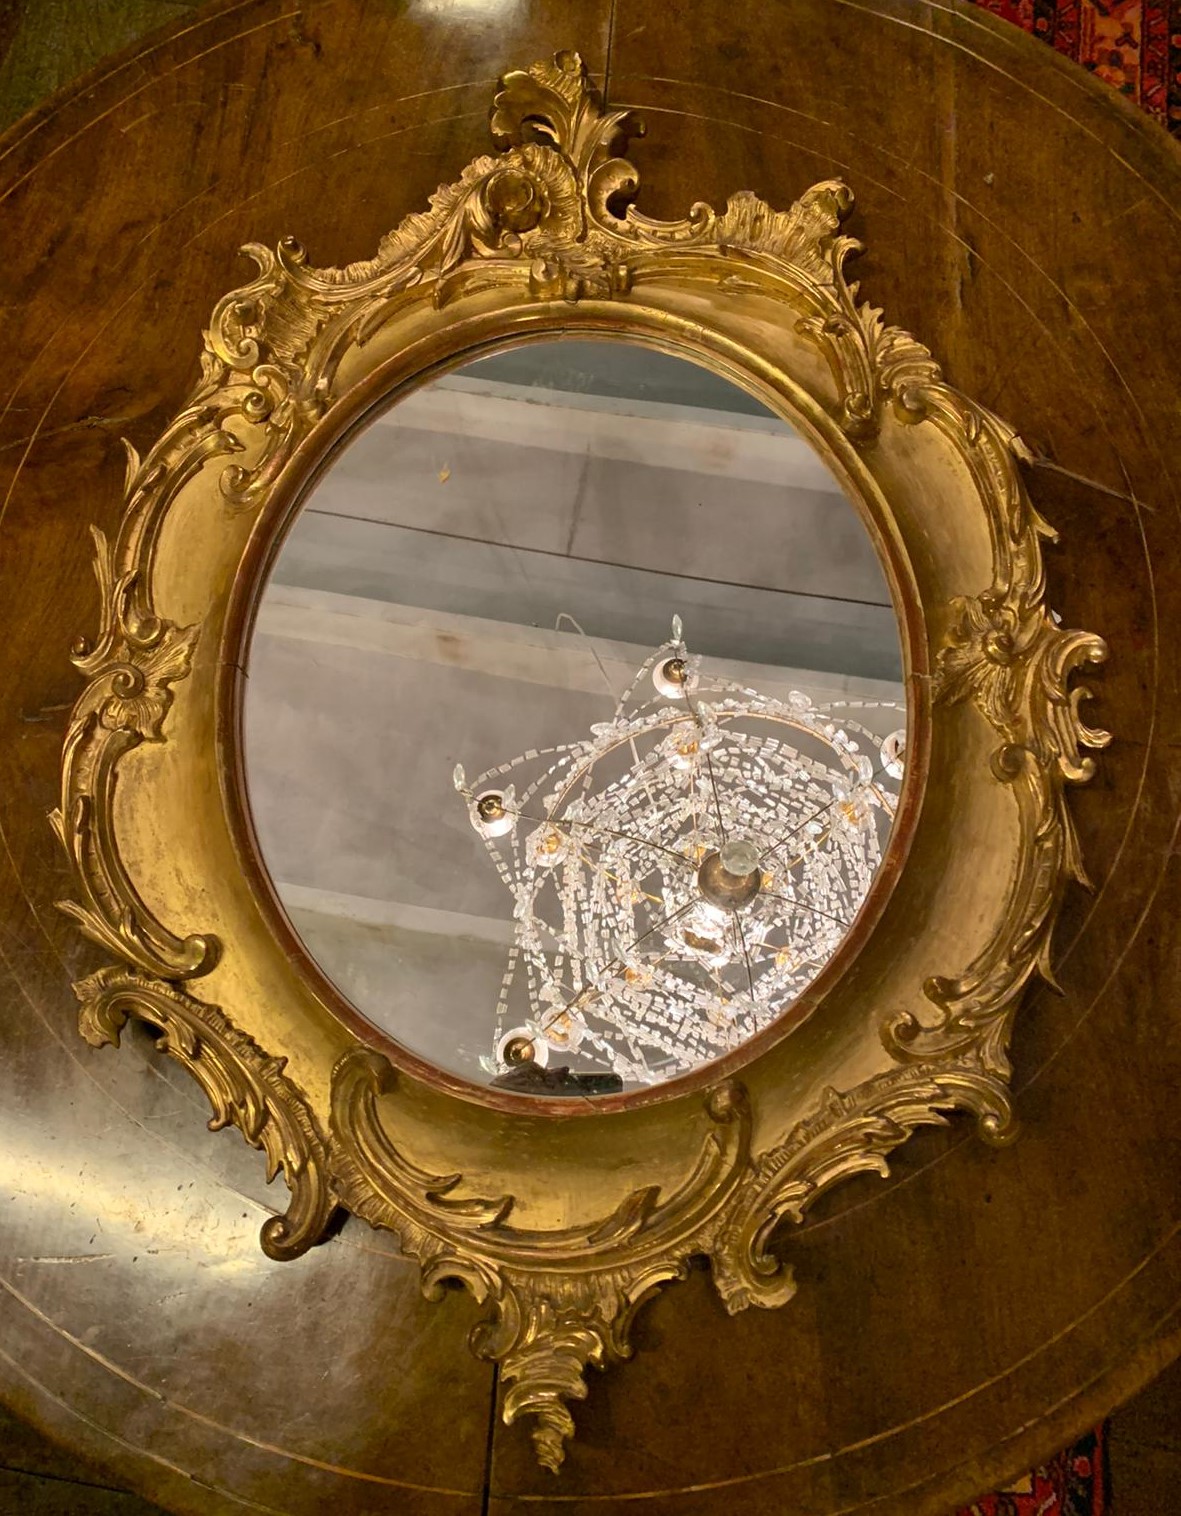 specc348 - specchiera ovale in legno dorato, epoca '800, cm l 69 x h 95